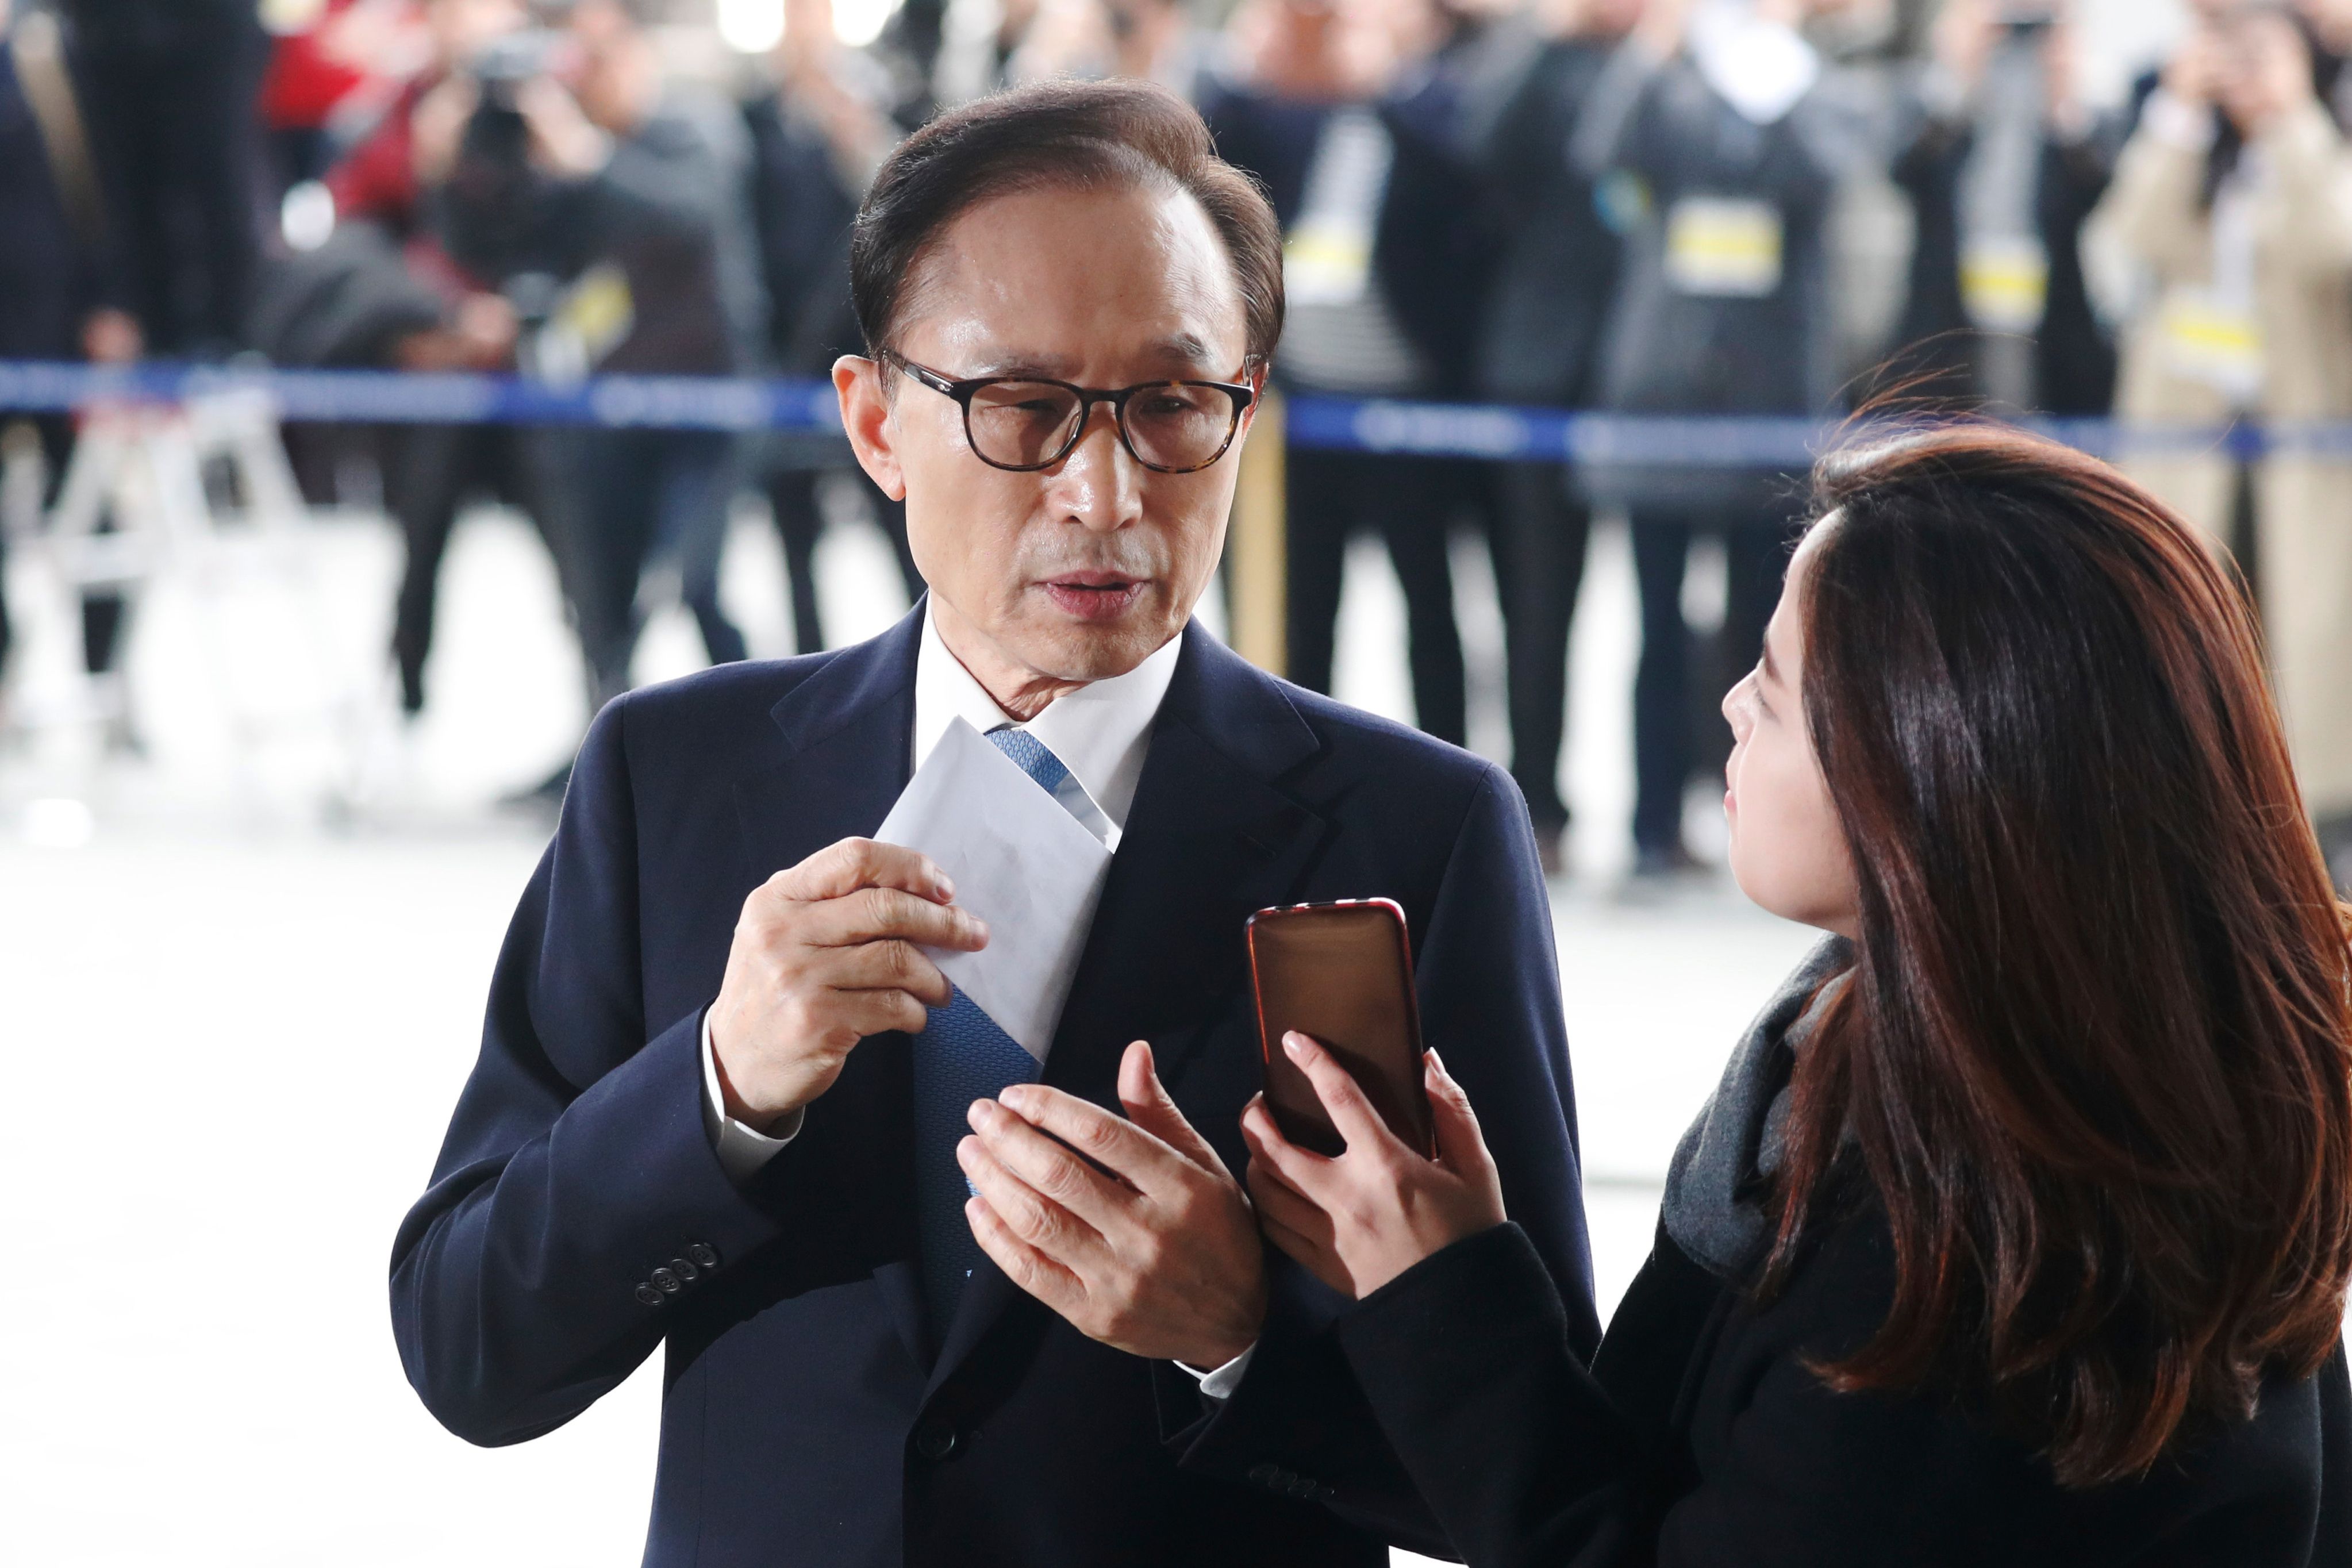 رئيس كوريا الجنوبية السابق يدلى بتصريح قبل استجوابه